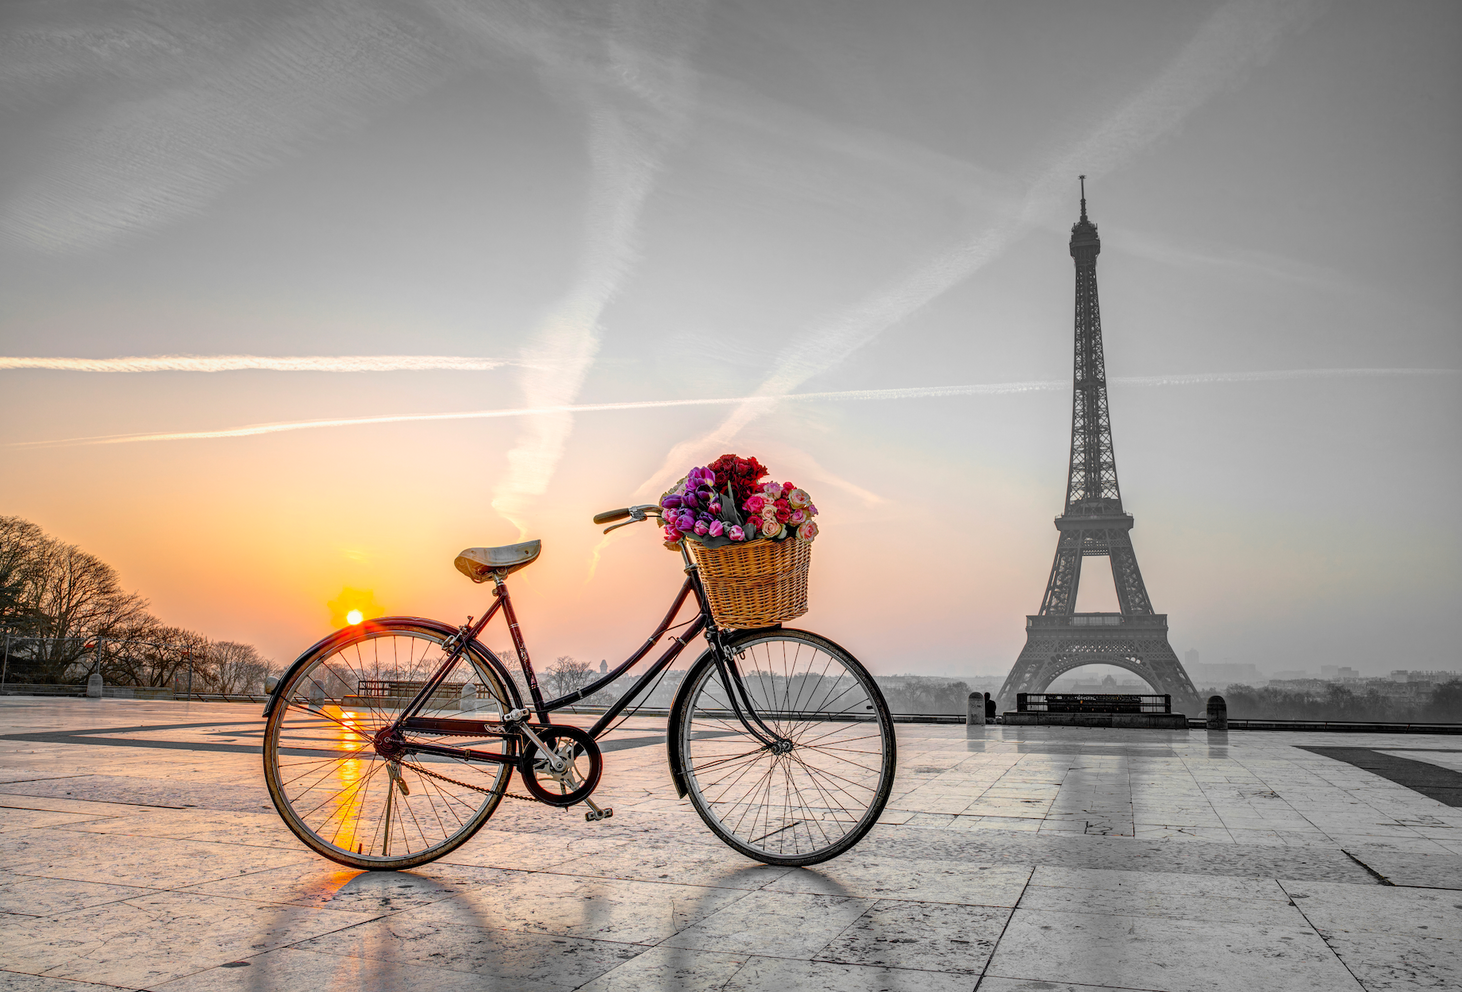 A Sunrise in Paris